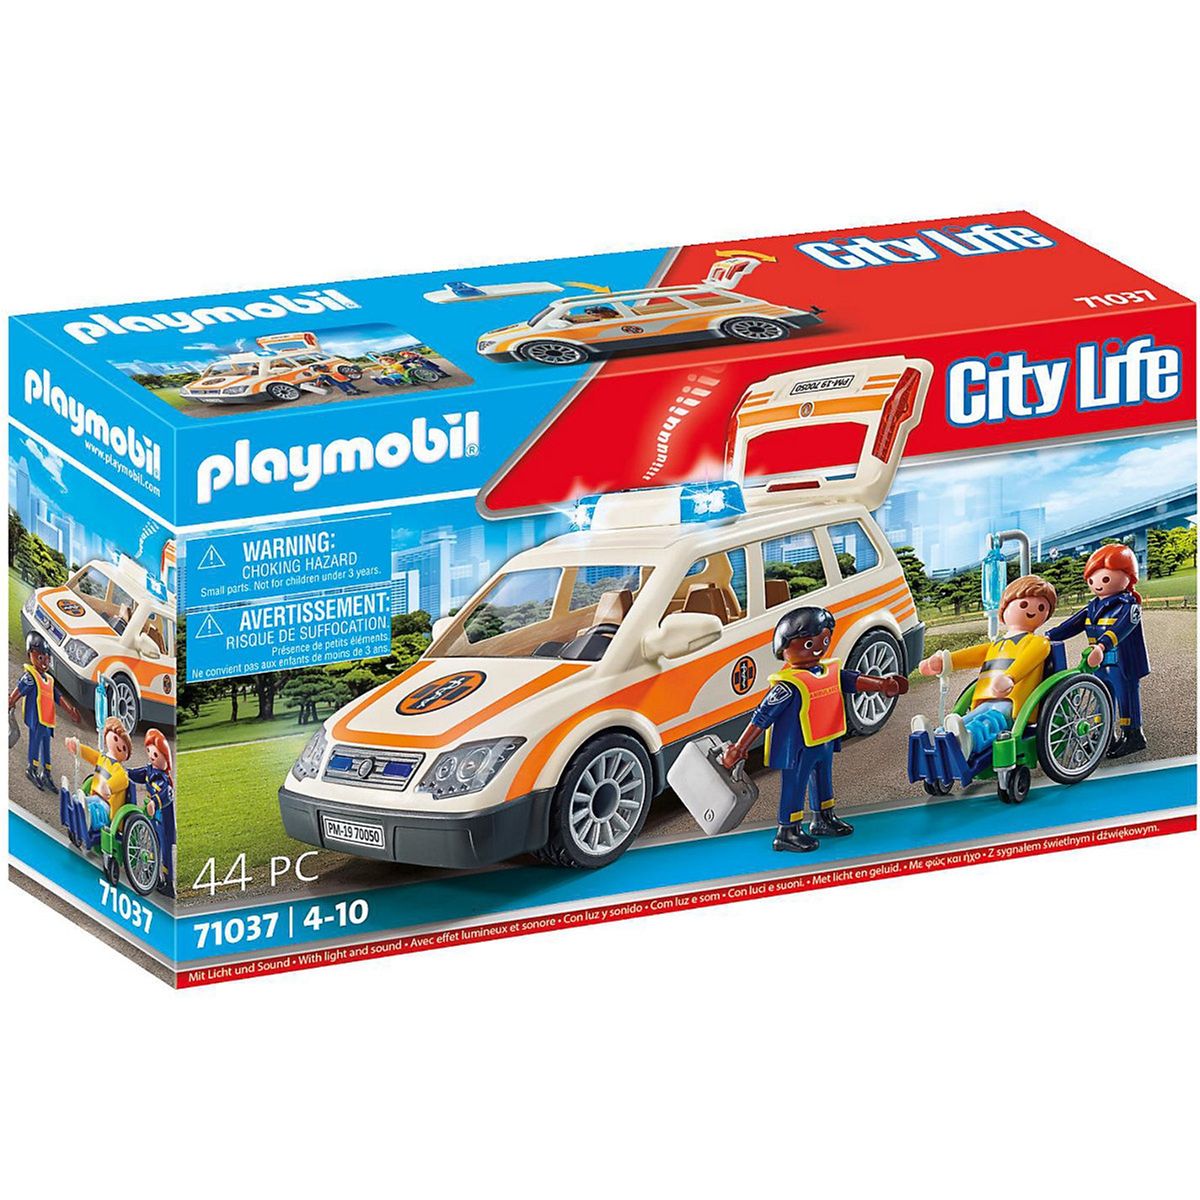 Playmobil voiture de ville avec maman et fille PlayMobil City Life